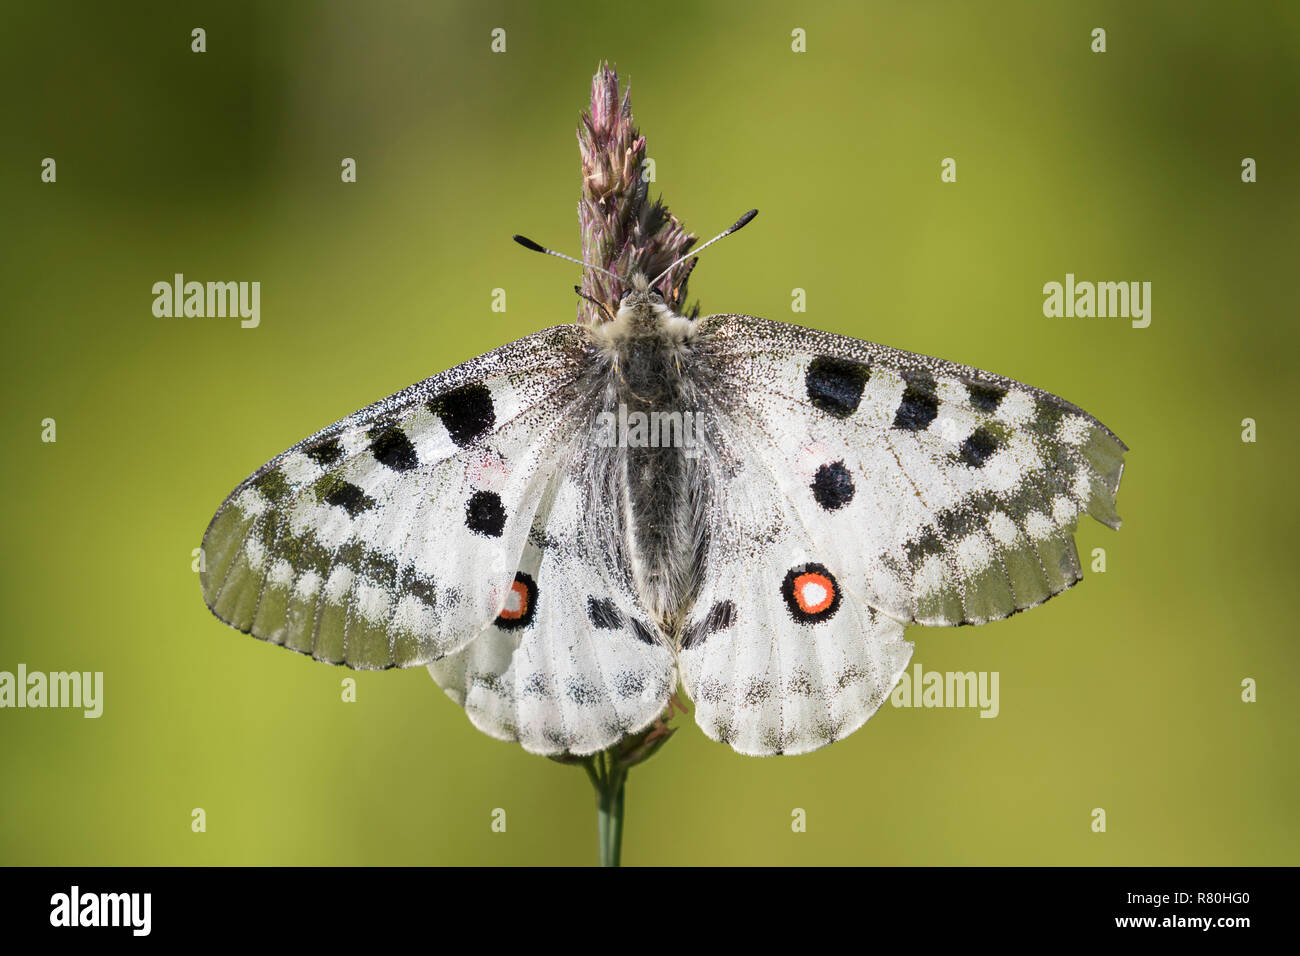 Mountain Apollo (Parnassius apollo). Butterfly on a fower. Hohe Tauern National Park, Carinthia, Austria Stock Photo